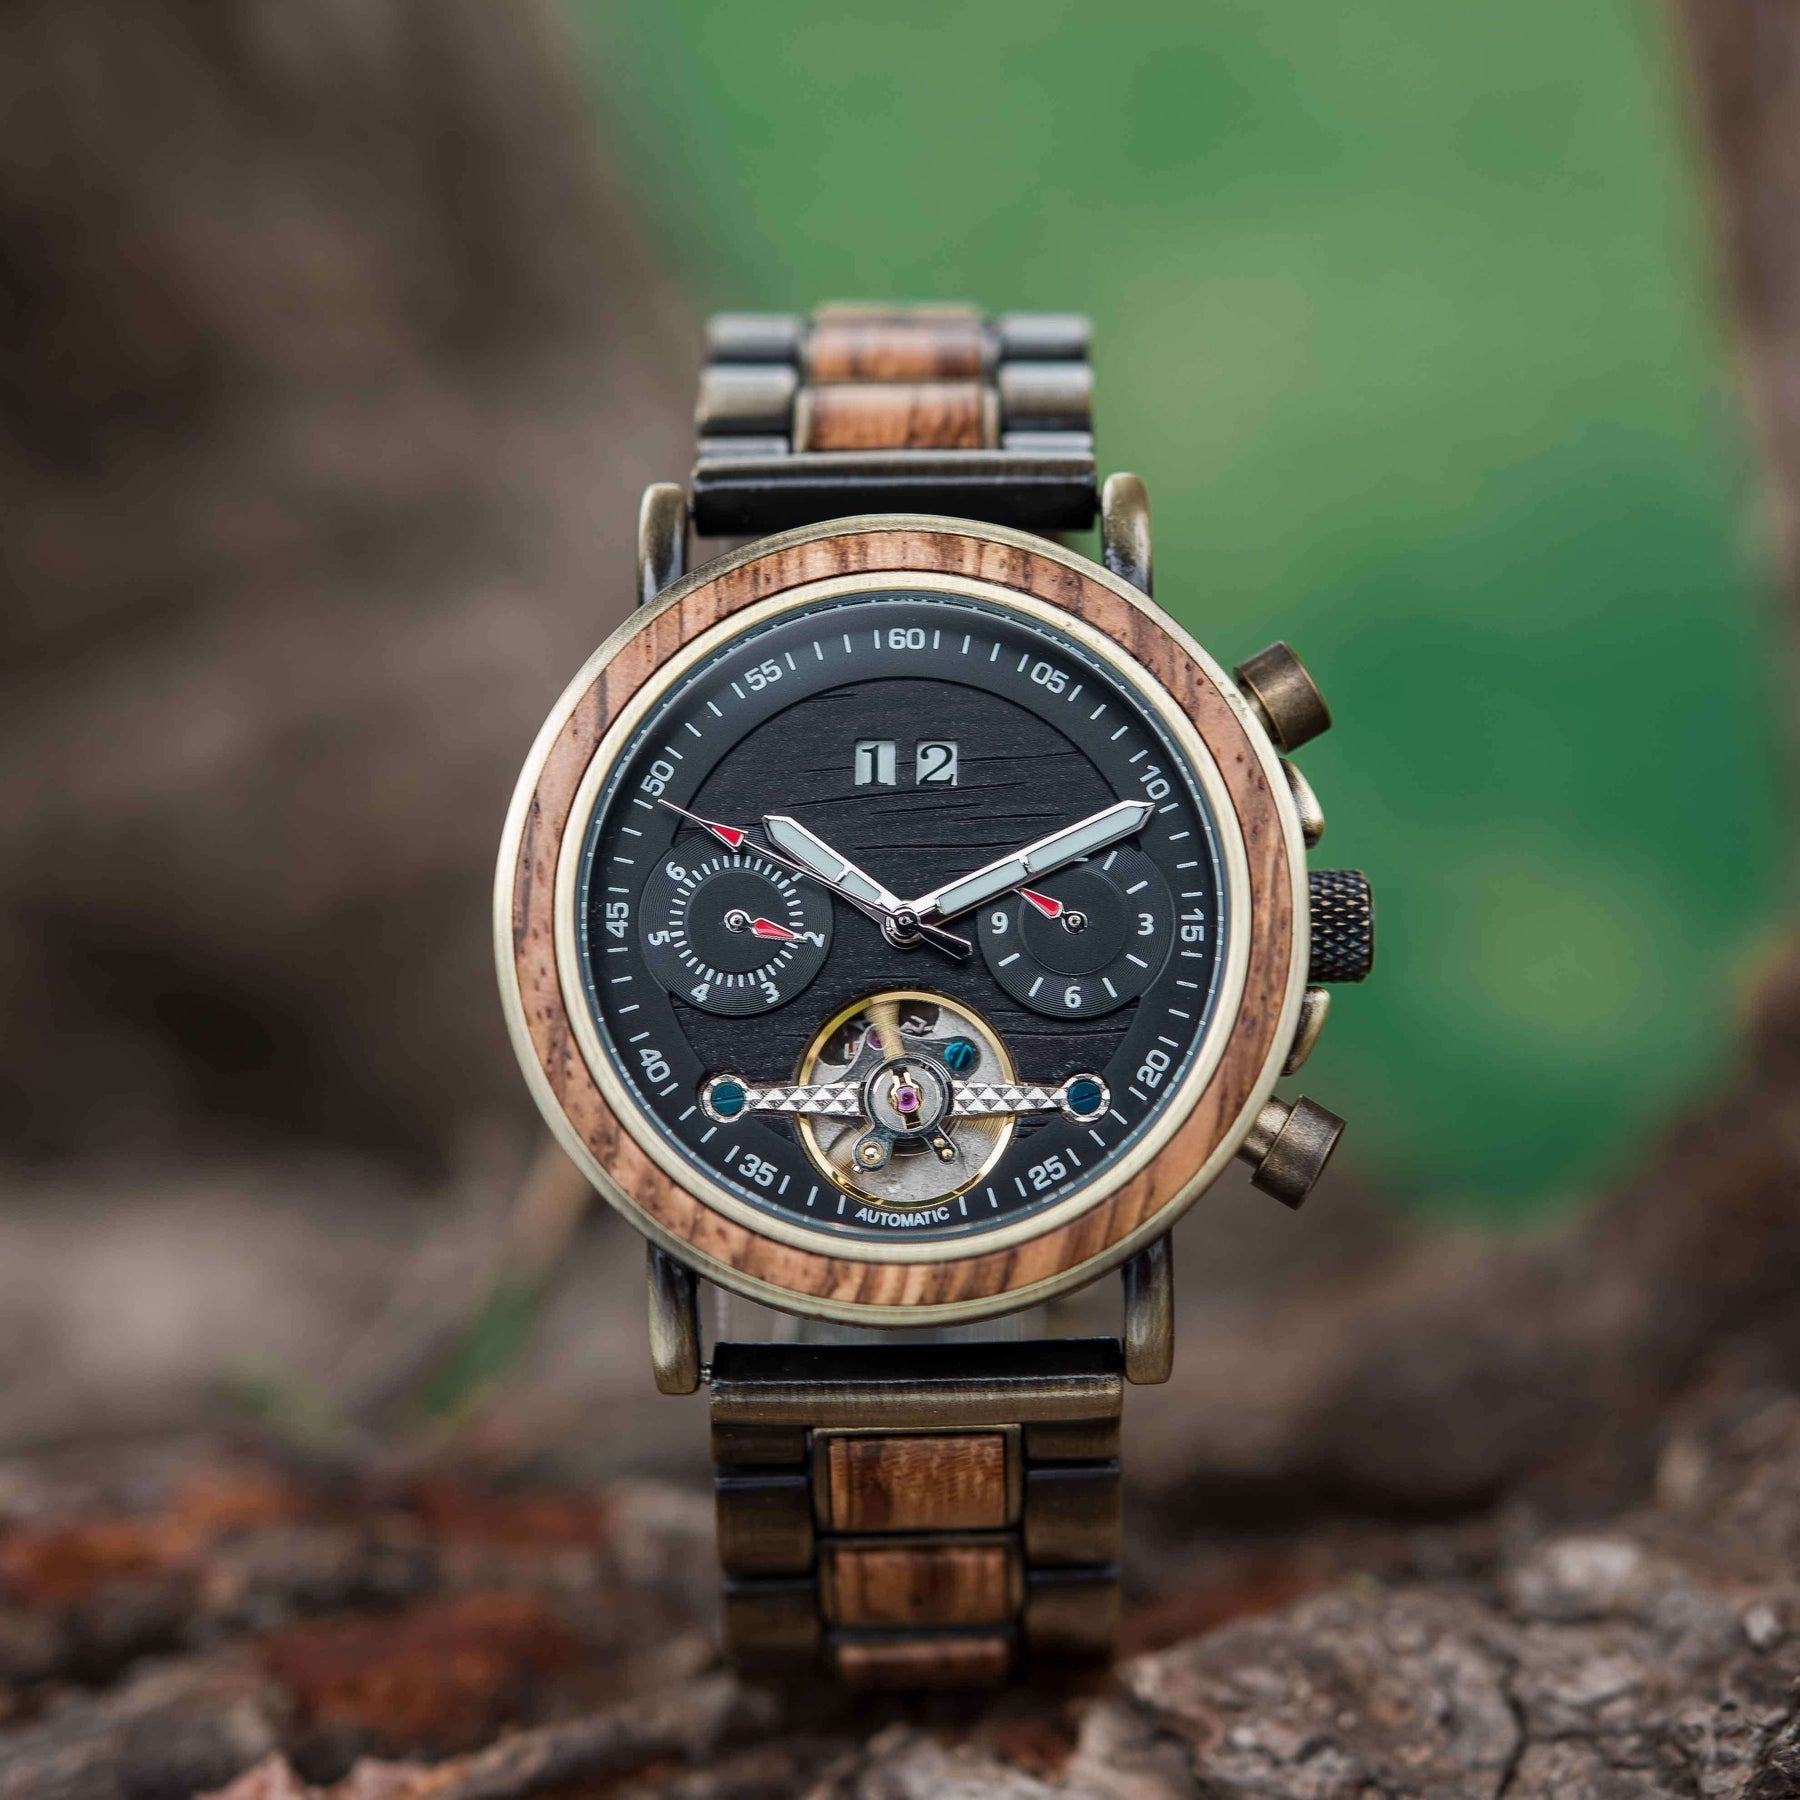 Egal ob Herren oder Damen - die Armbanduhr "Bergland" begeistert alle durch ihr tolles Design